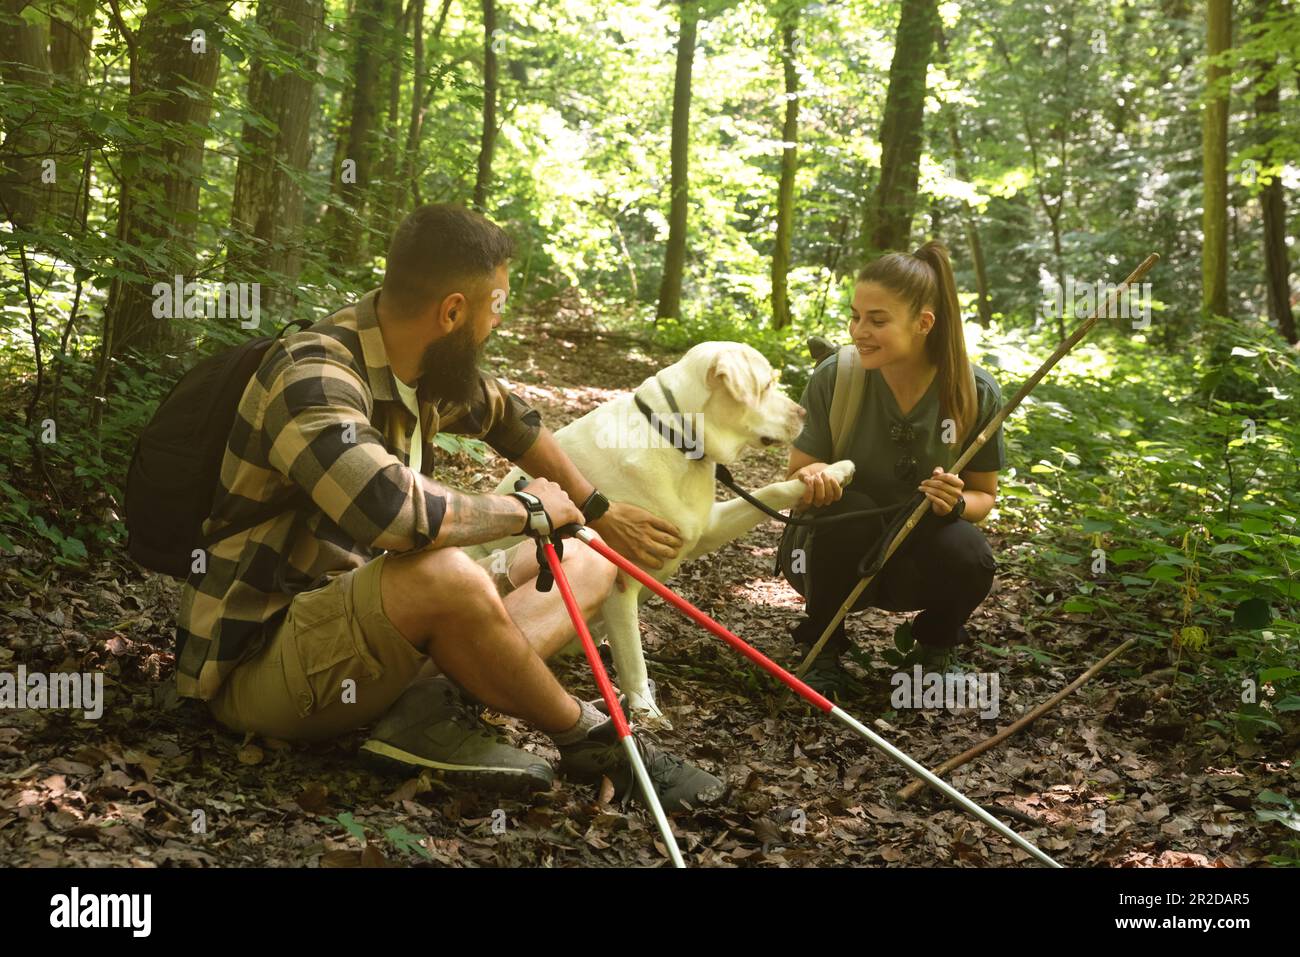 Jeune couple à la recherche de la liberté dans la nature marchant avec leur chien à travers la forêt se sentant heureux et accompli, s'échappant de la ville quotidienne Banque D'Images